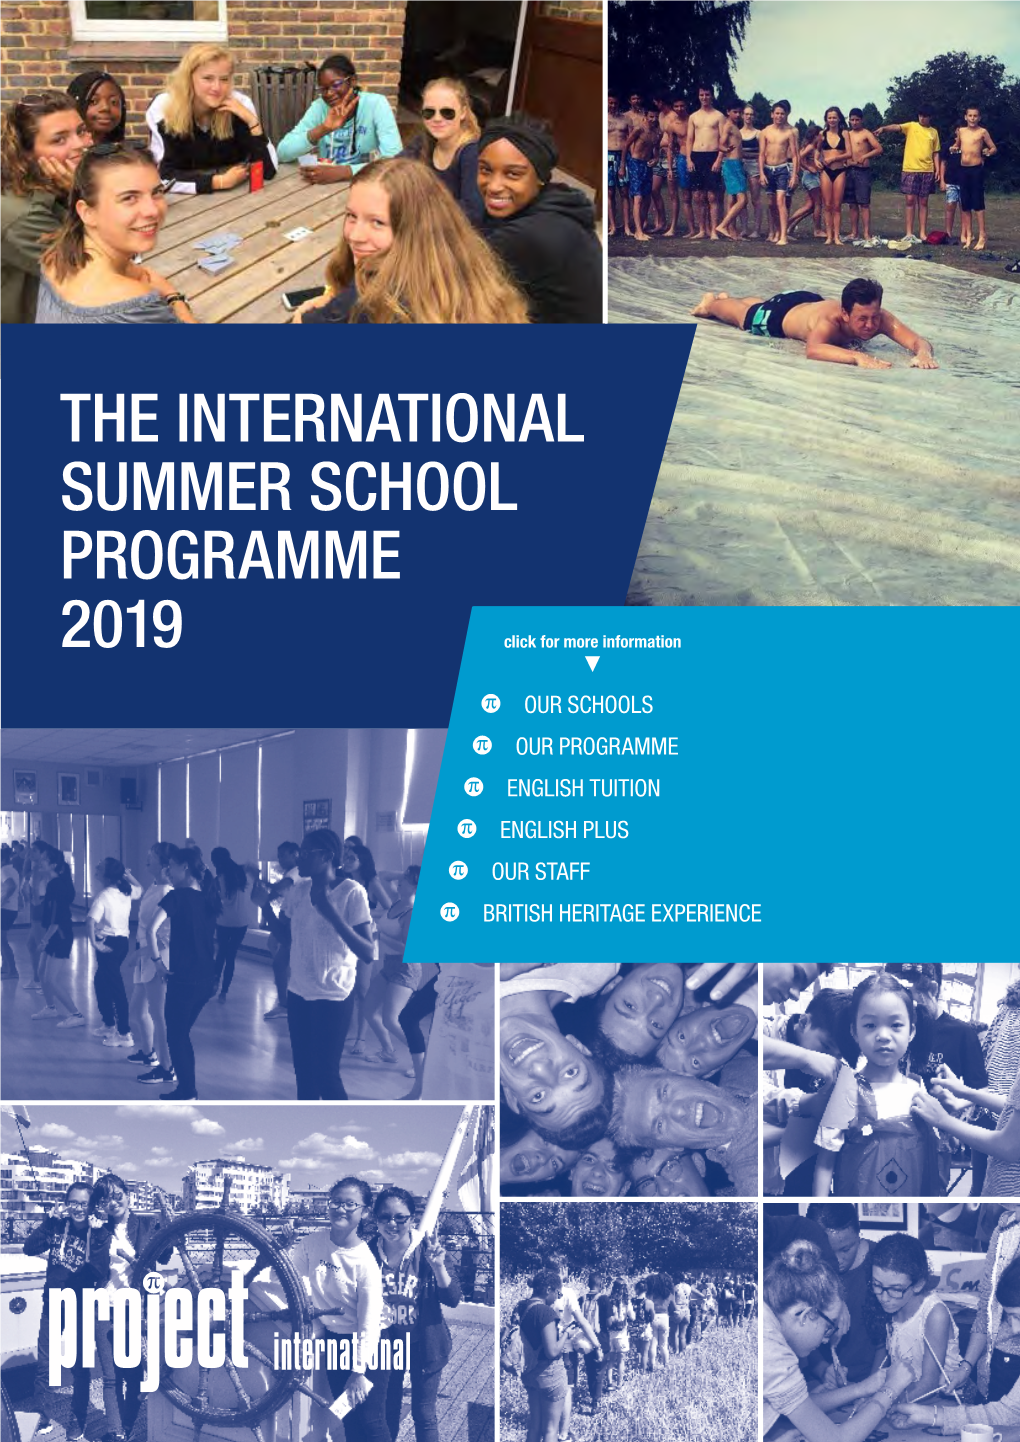 The International Summer School Programme 2019